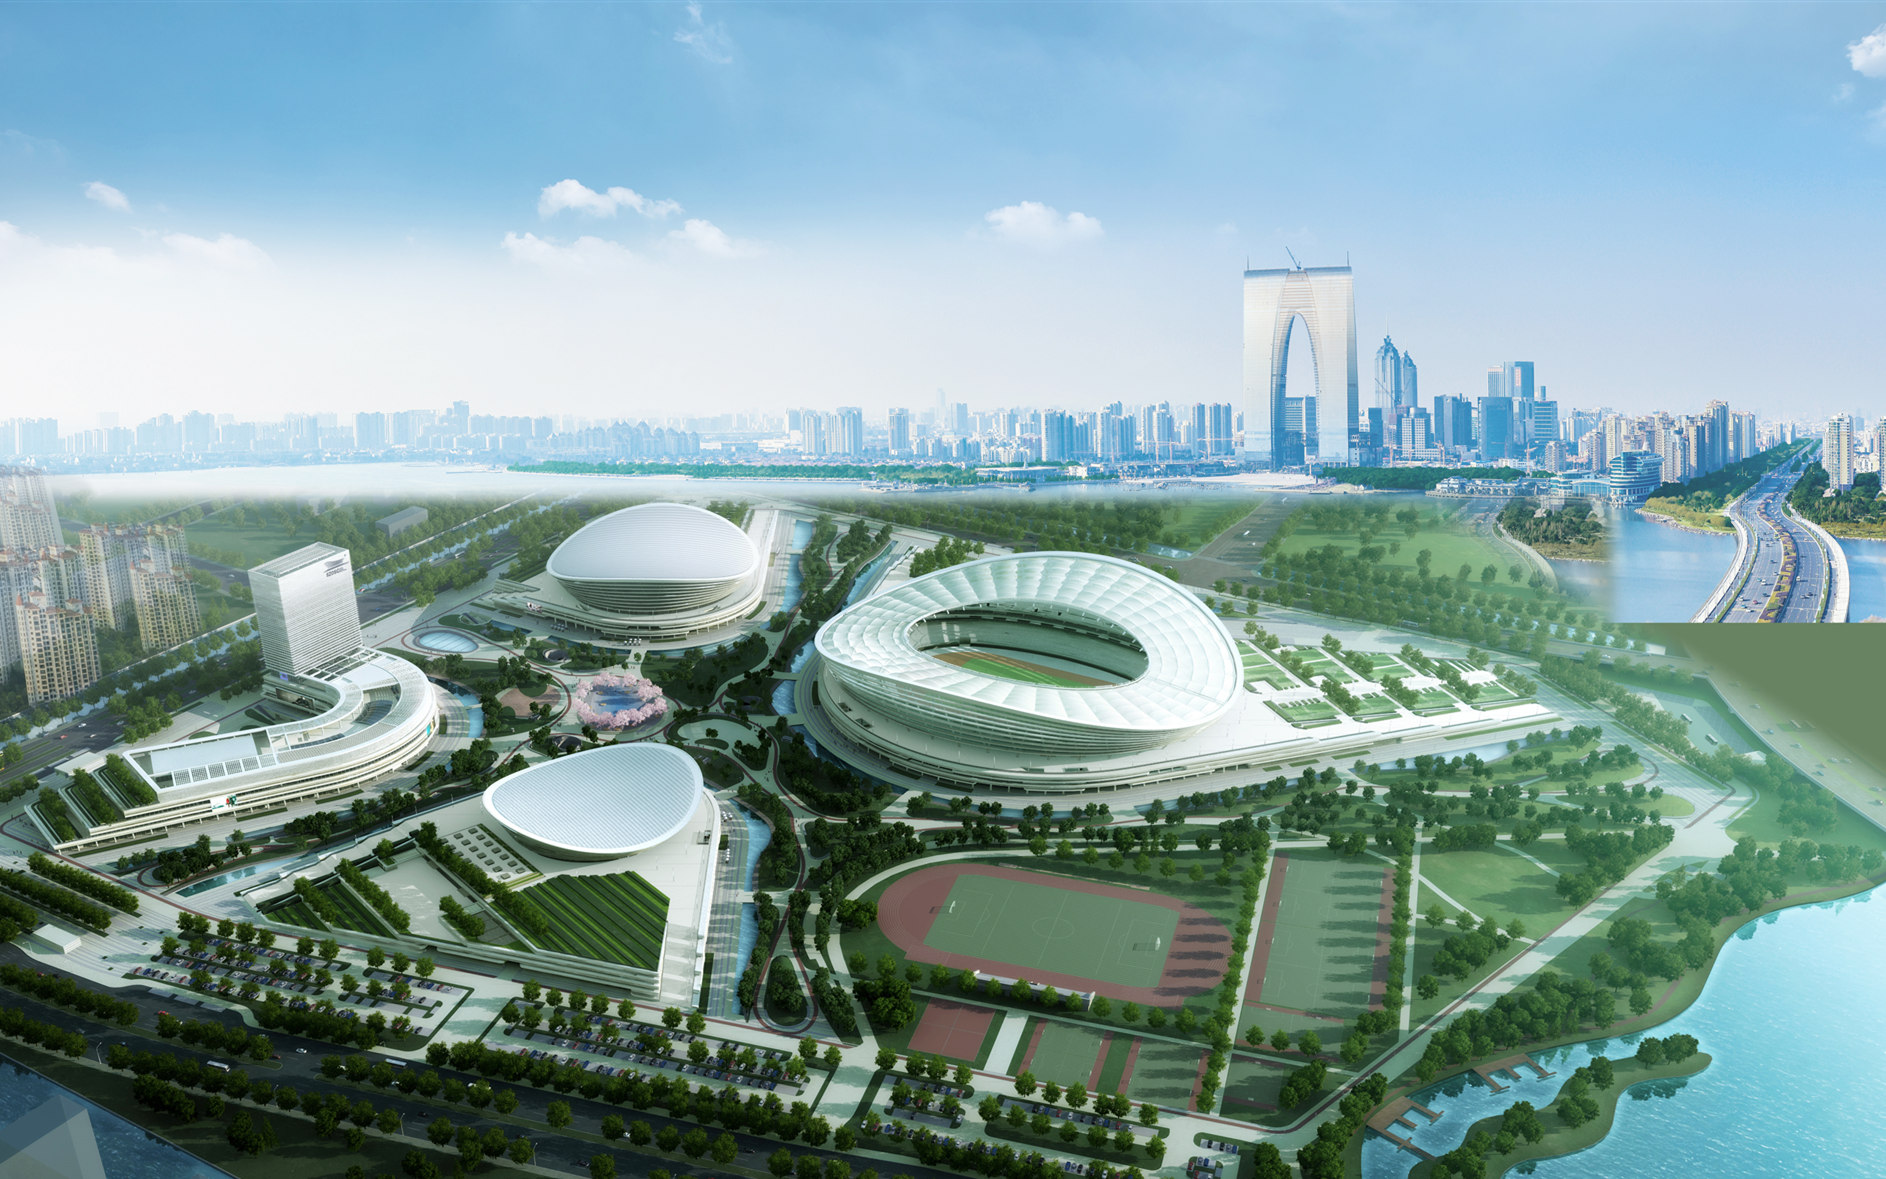 【携程攻略】北京奥林匹克公园景点,奥林匹克公园位于北京市北四环中路的北侧，是北京2008年奥运会的主要…